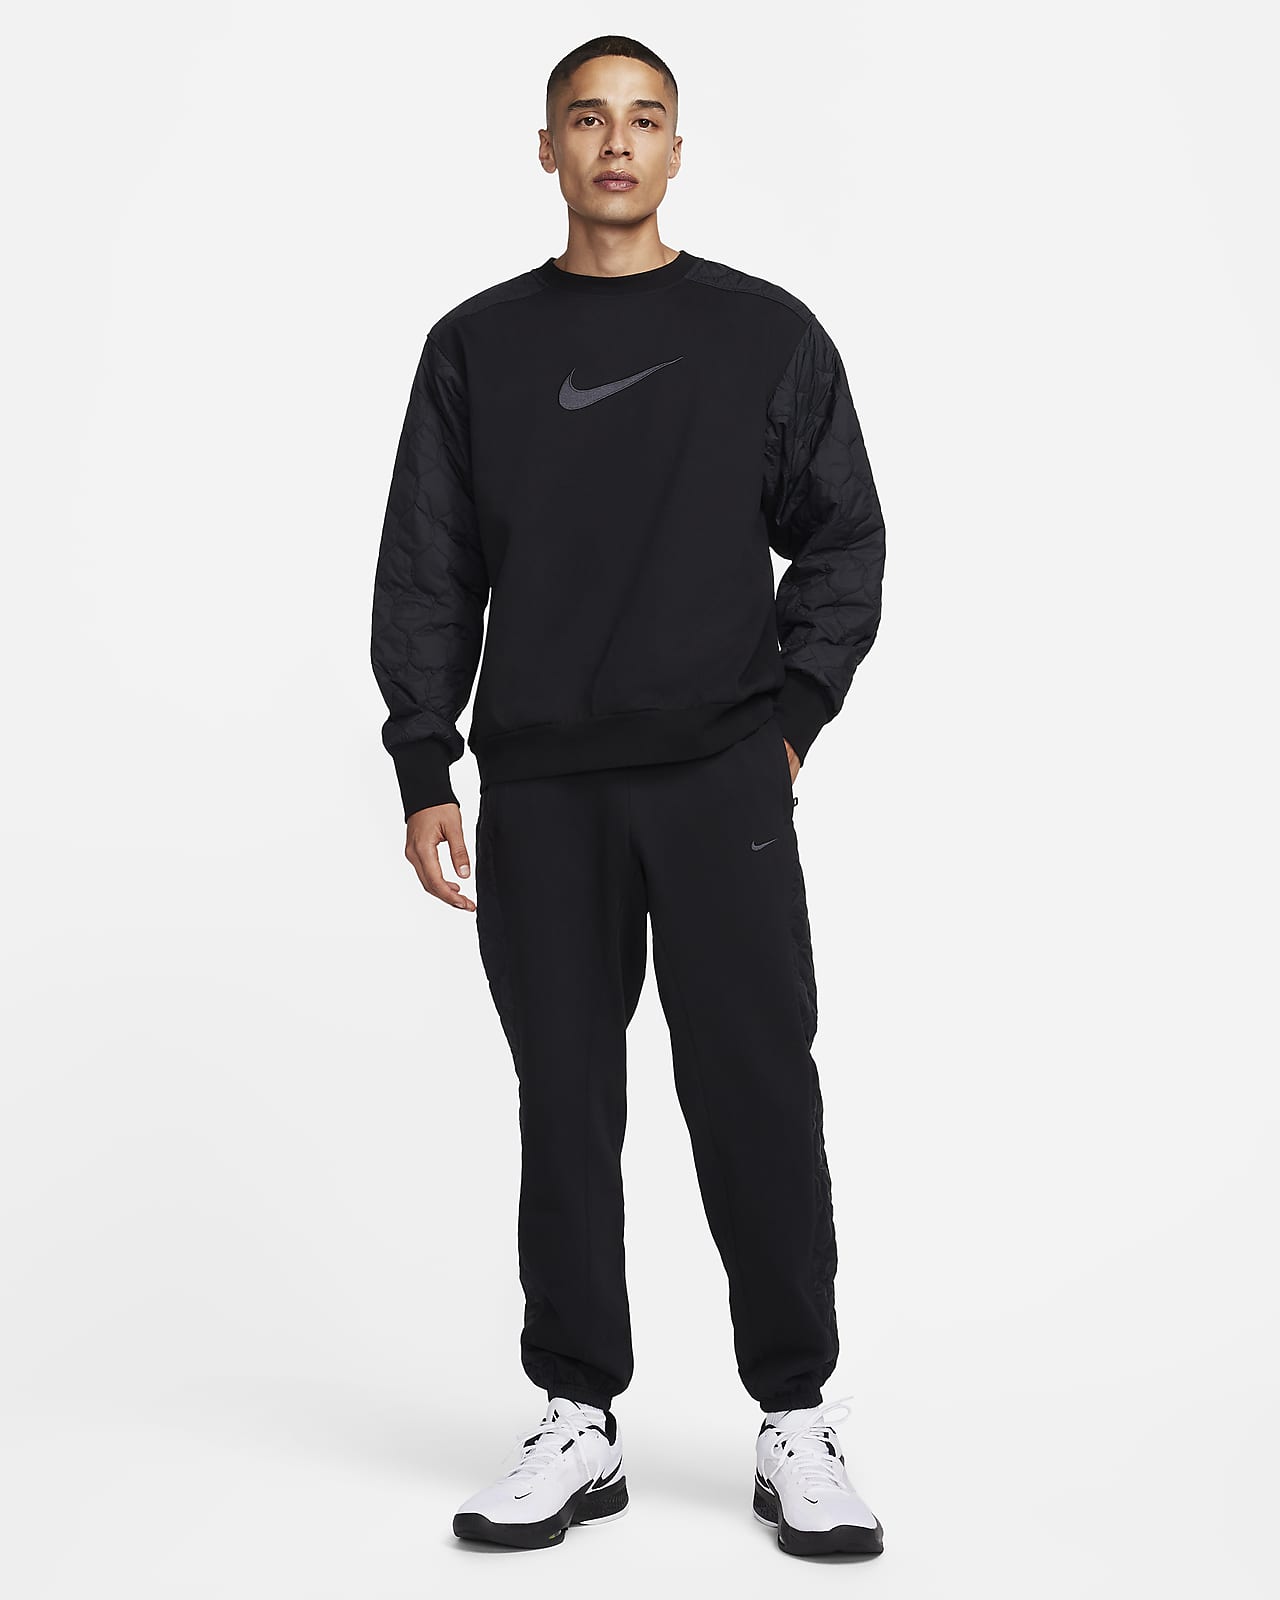 Nike Standard Issue Men's Dri-FIT Football Pants